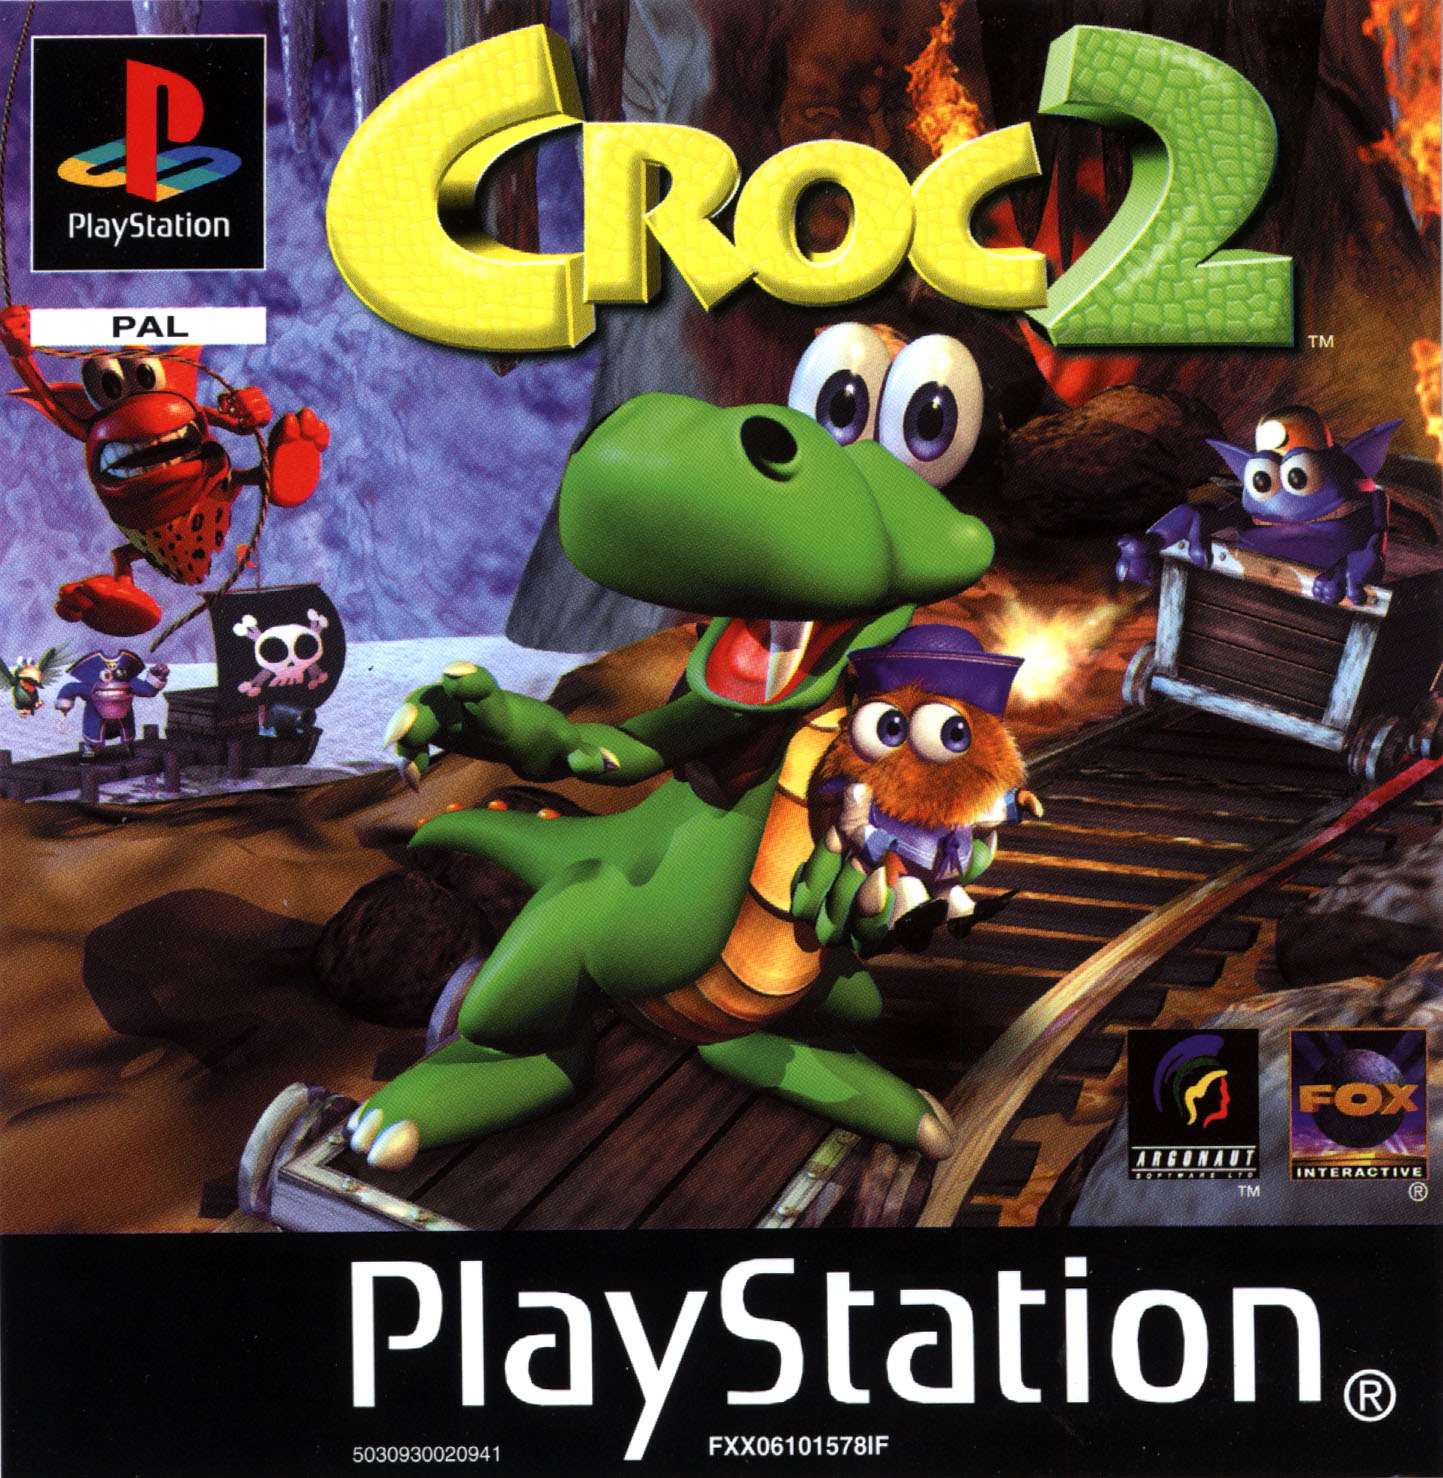 Croc 2 Details - LaunchBox Games Database